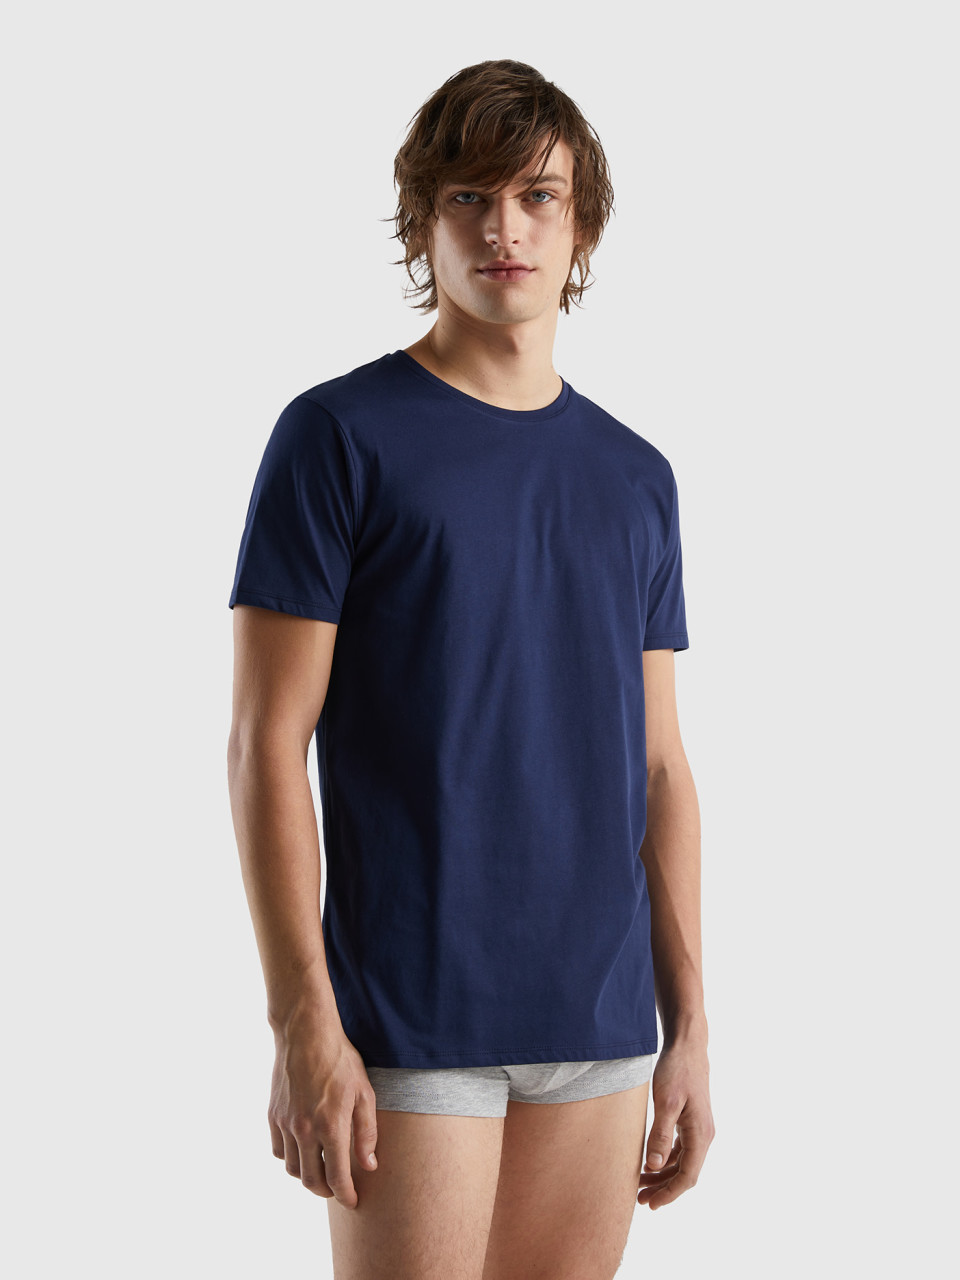 Benetton, Camiseta De Algodón De Fibra Larga, Azul Oscuro, Hombre